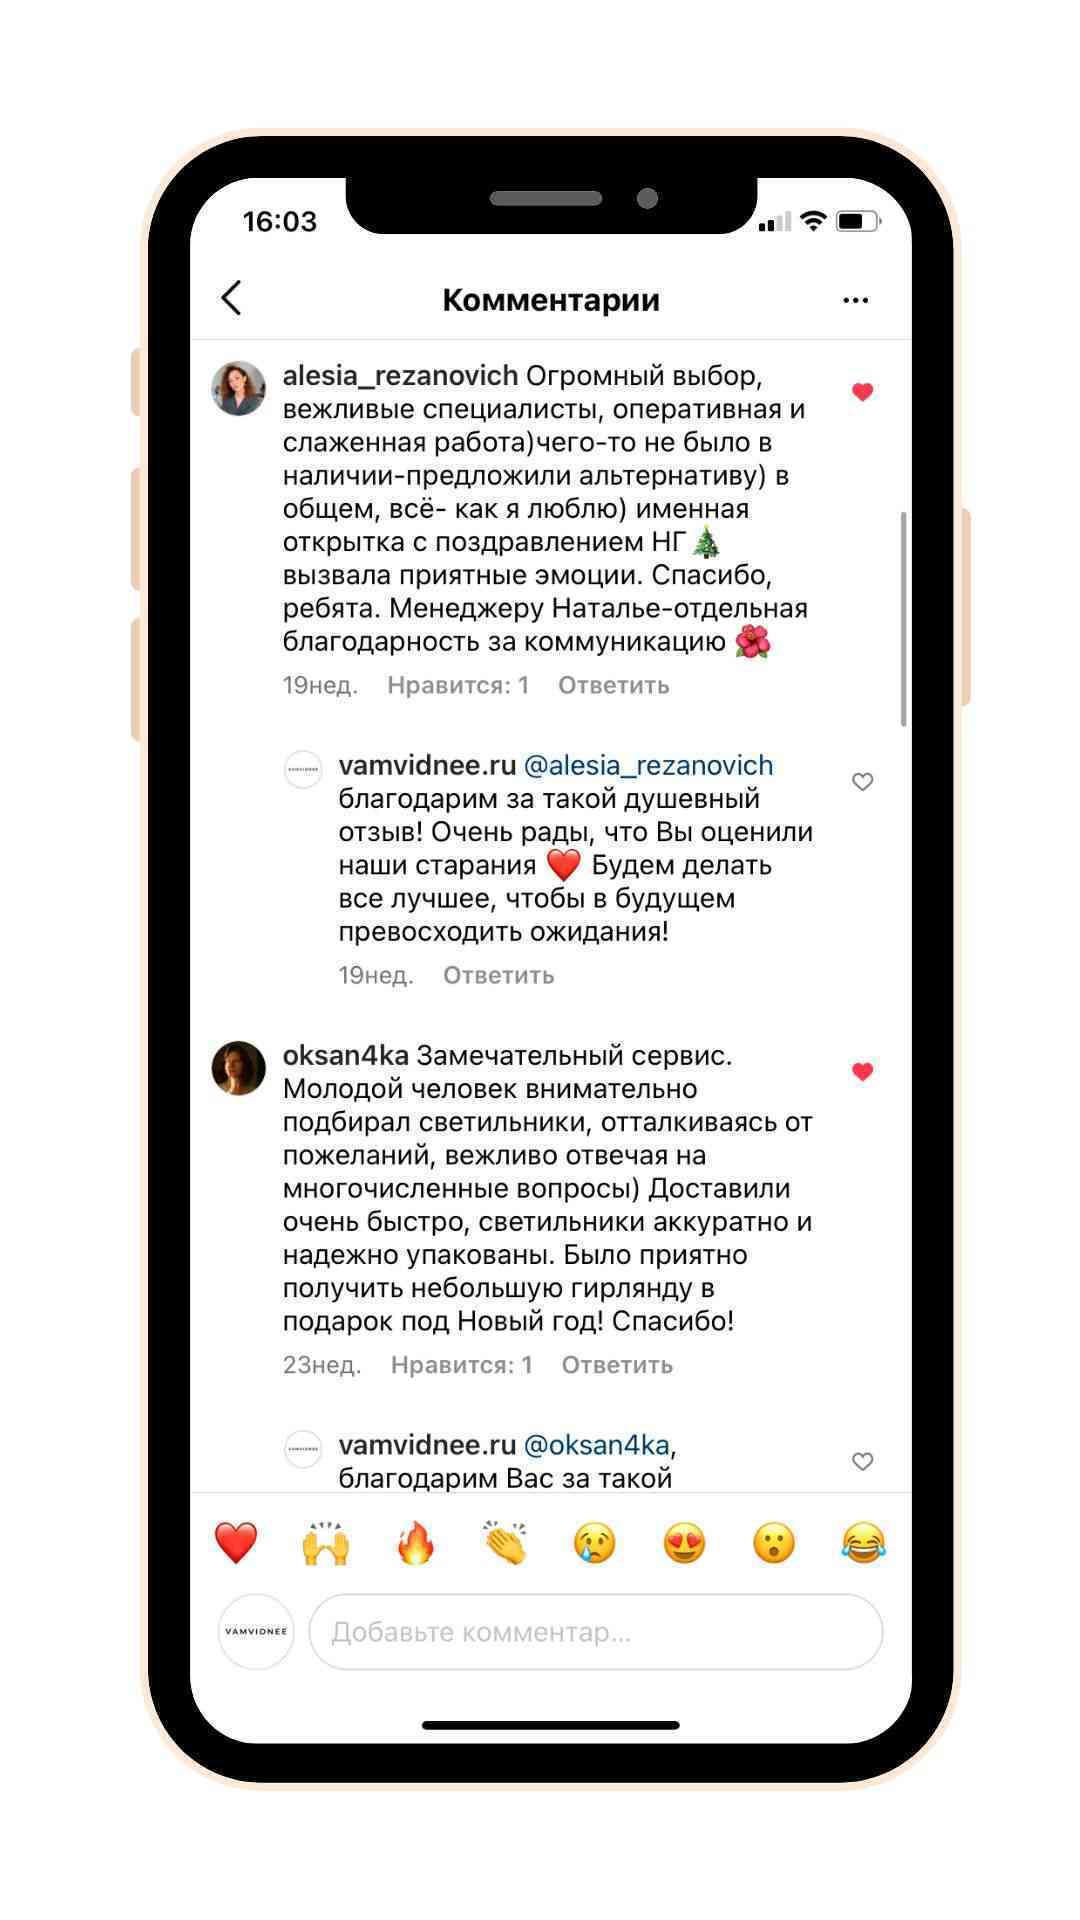 отзыв о светильниках, отзыв о компании Vamvidnee.ru